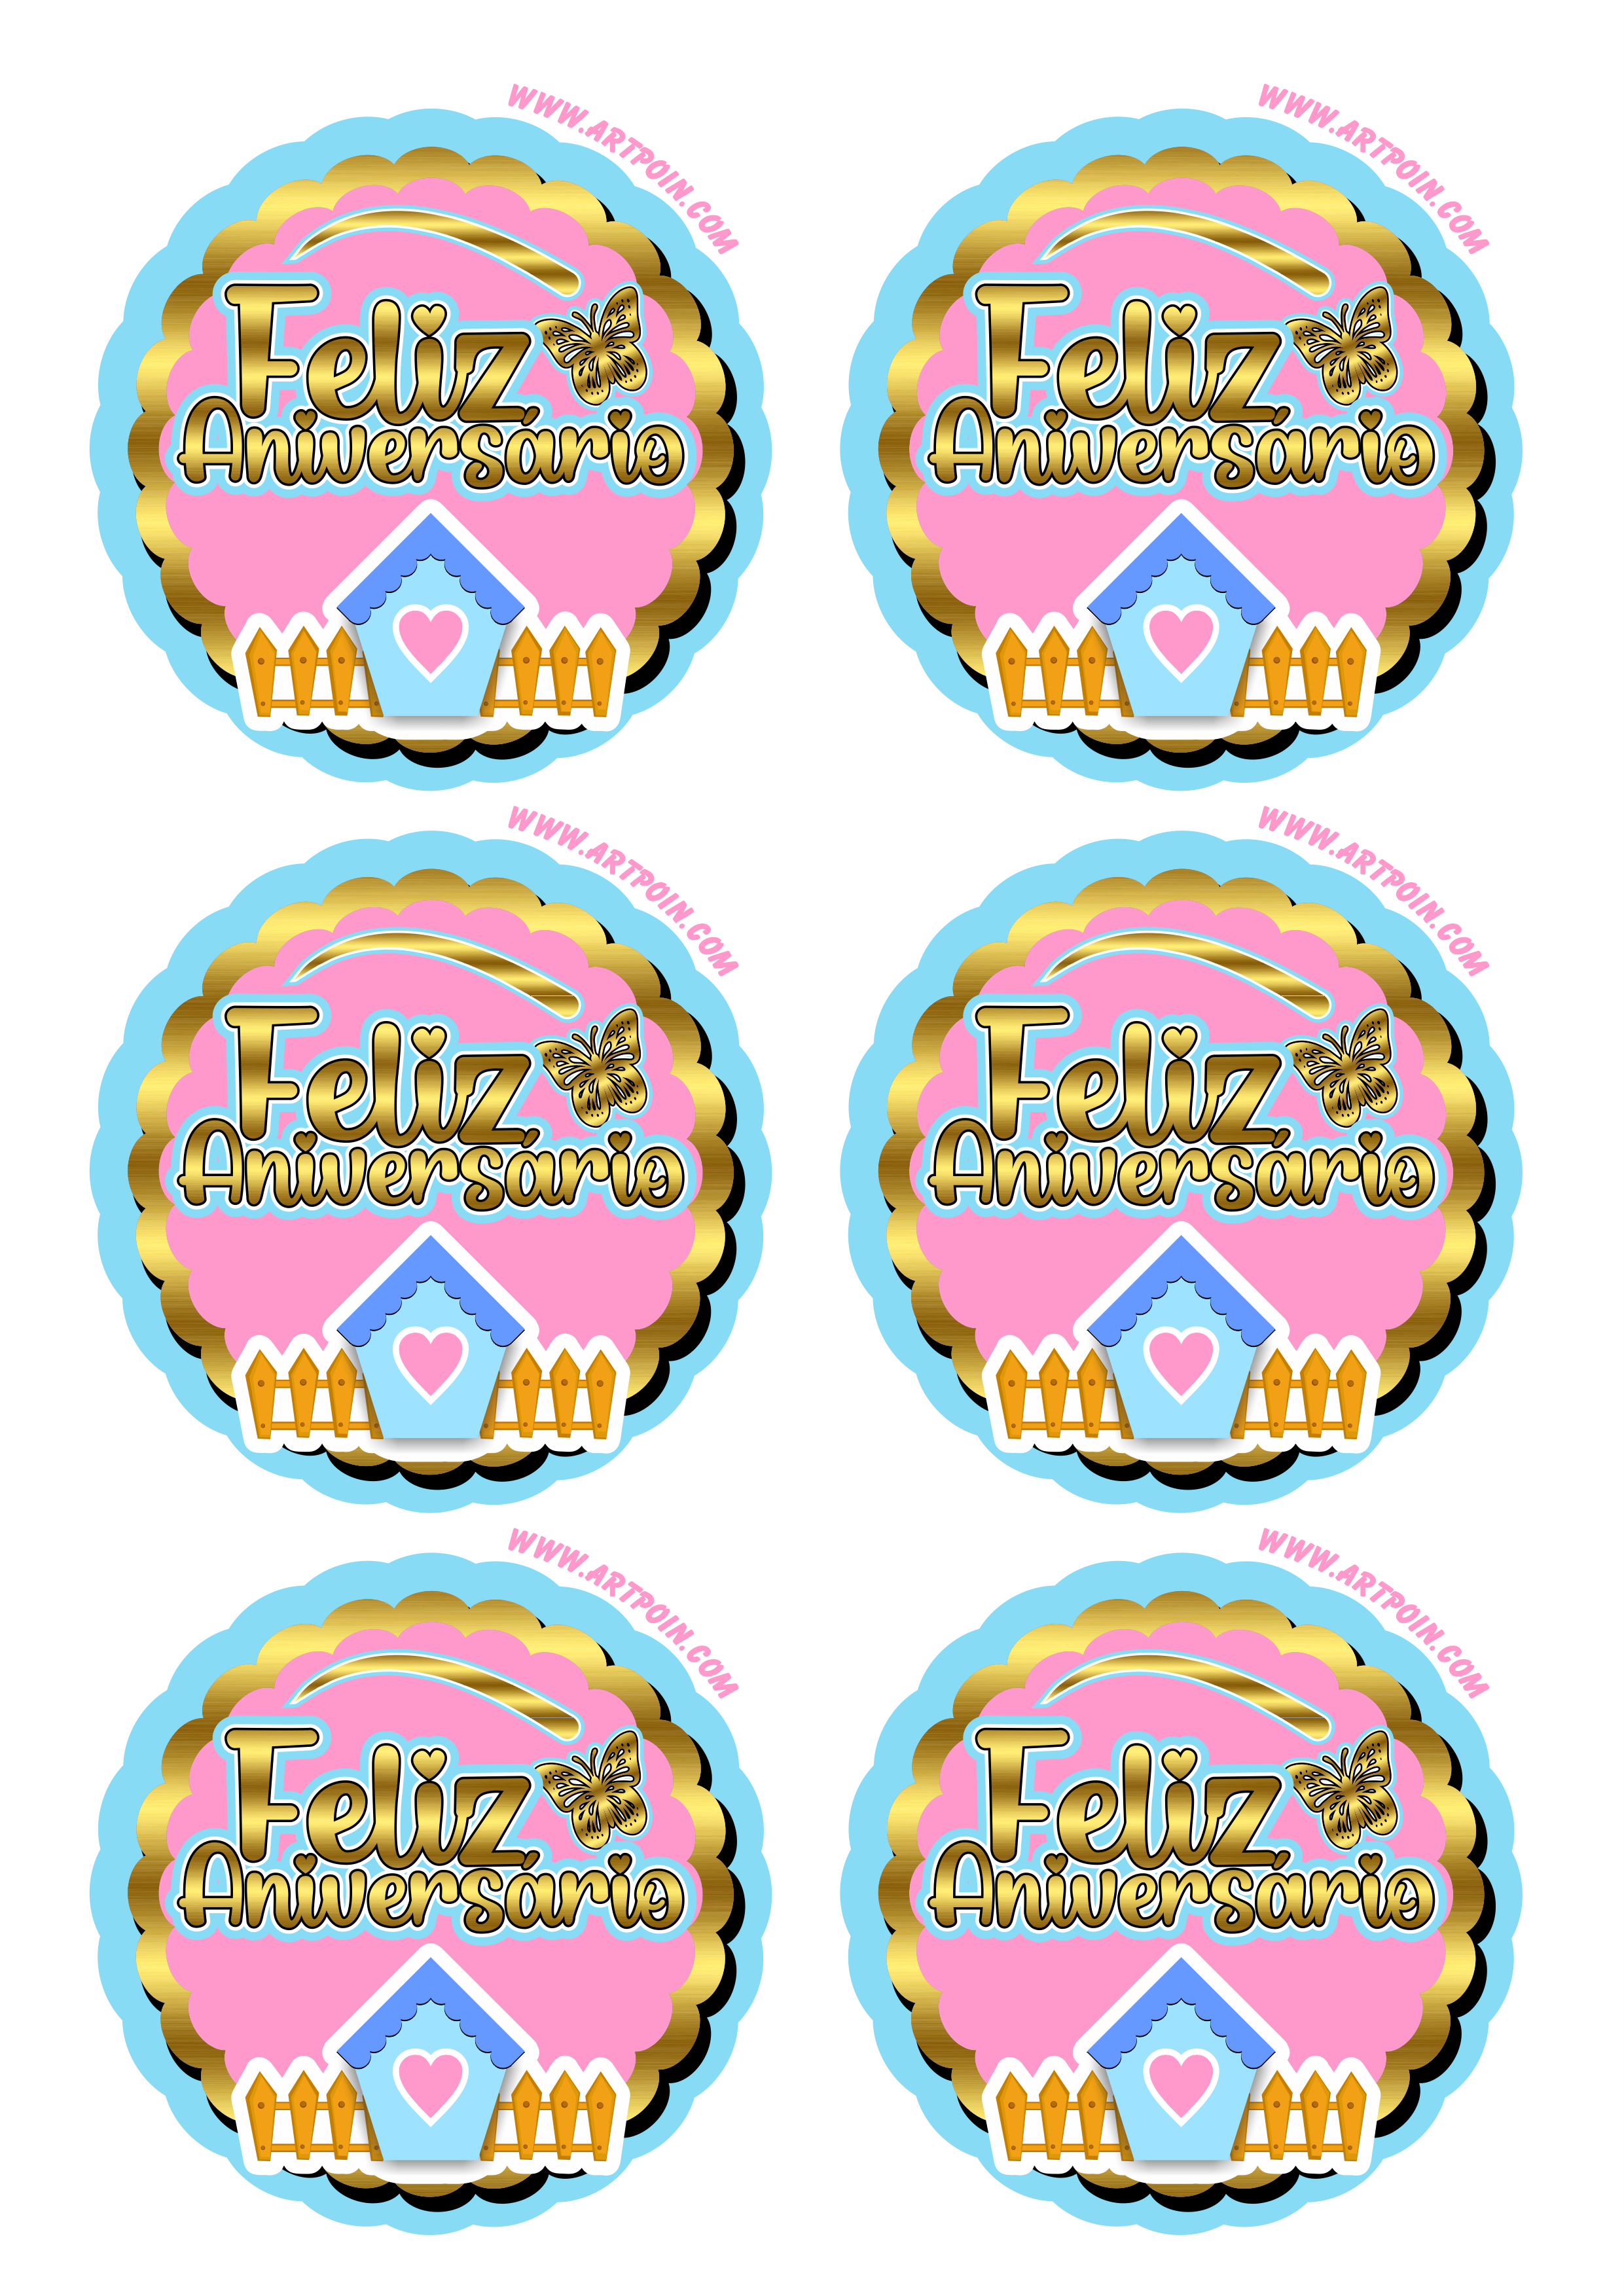 Jardim encantado feliz aniversário dourado azul e rosa com casinha borboleta adesivo tag sticker painel 6 imagens png